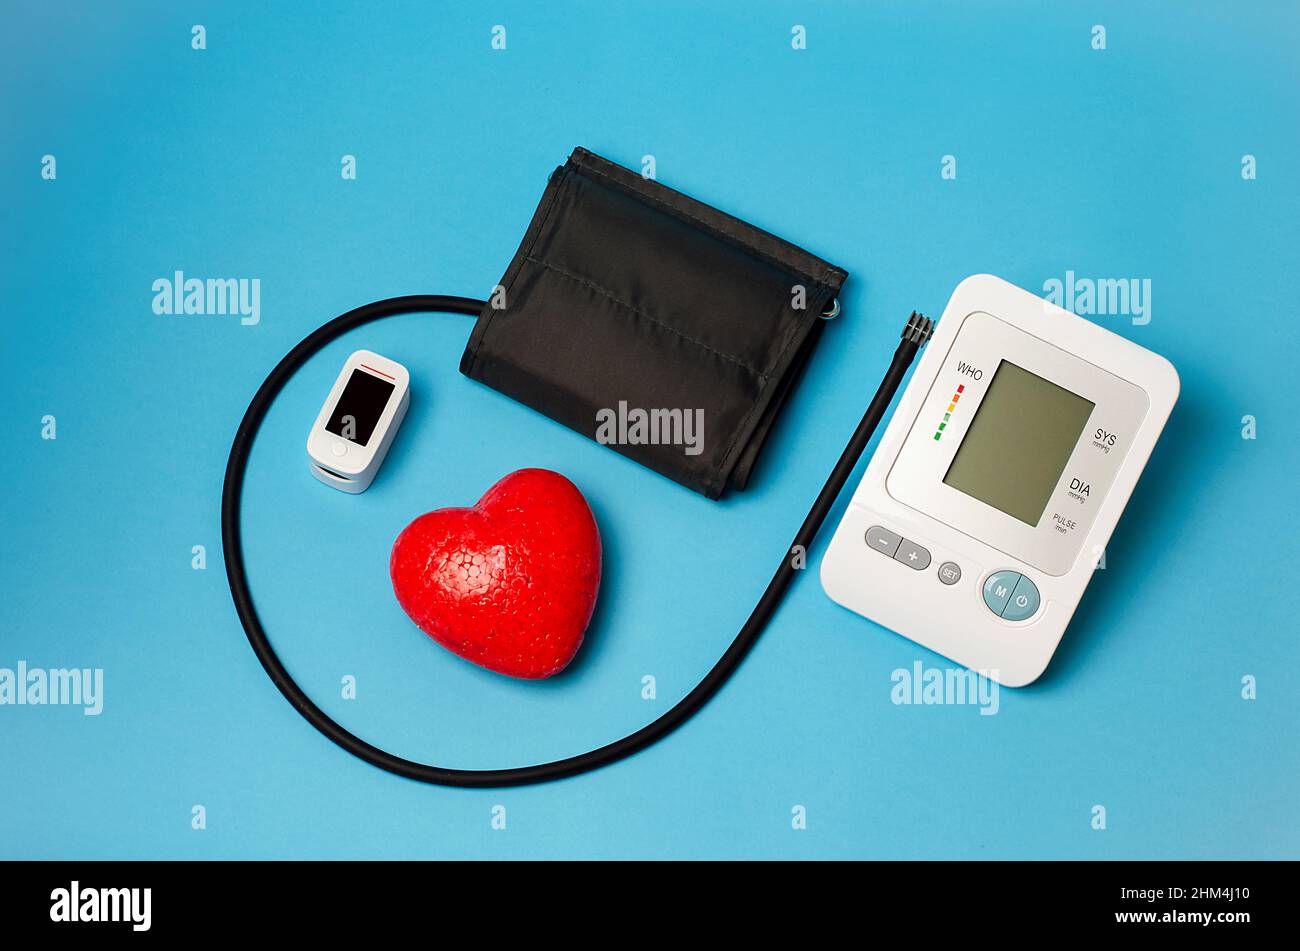 Sur un plan médical, un tonomètre automatique pour mesurer la pression, un oxymètre de pouls, un cœur rouge.Mesure du niveau d'oxygène dans le sang. Banque D'Images